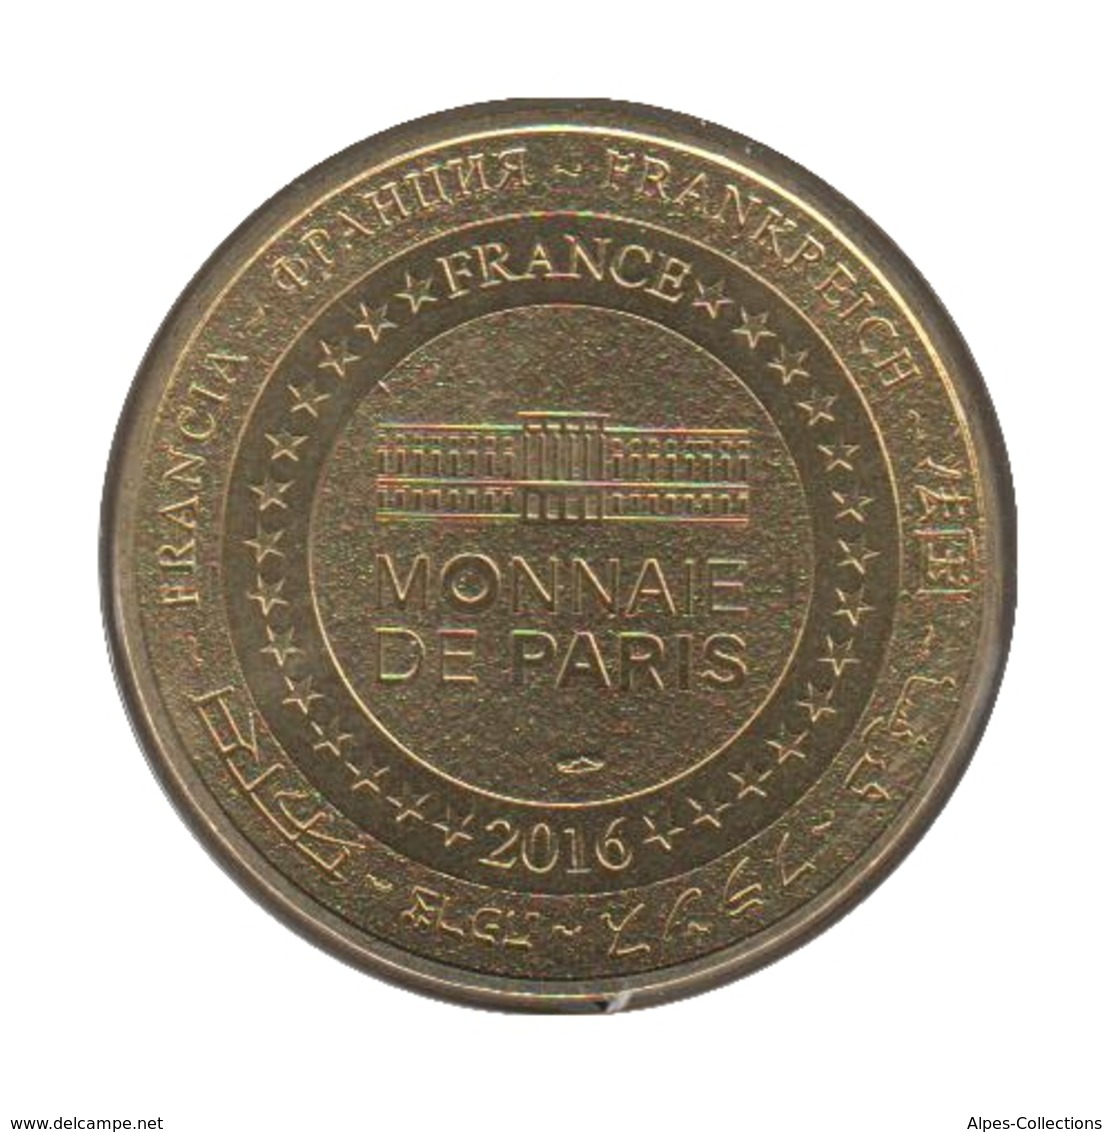 24004 - MEDAILLE TOURISTIQUE MONNAIE DE PARIS 24 - Sarlat - 2016 - 2016